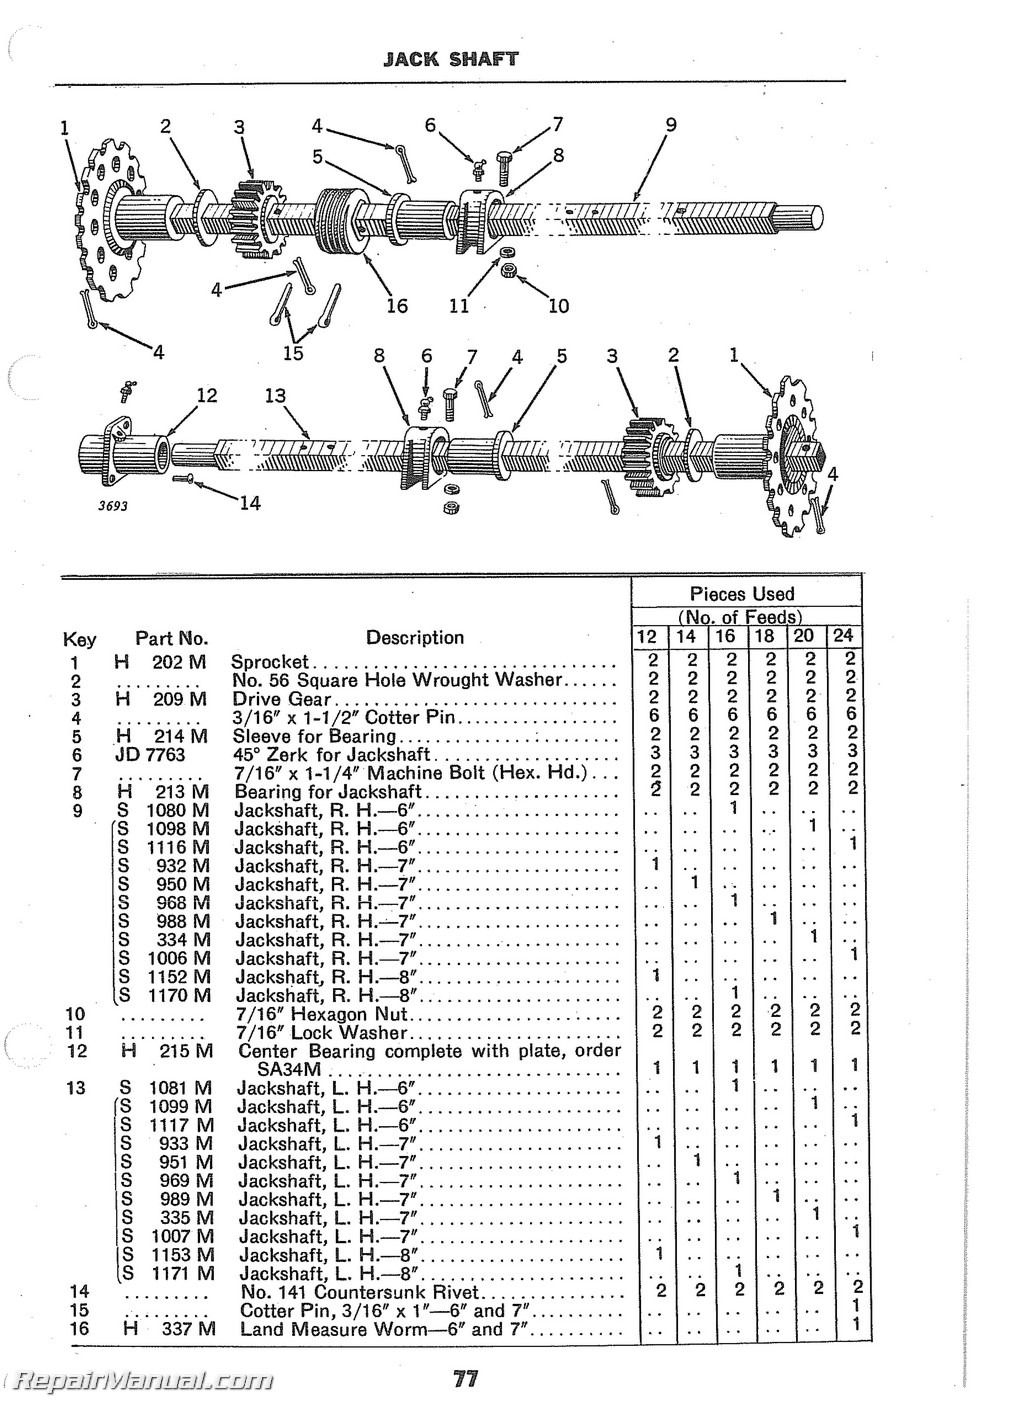 John Deere Van Brunt Model B Grain Drill Operators Manual ... wiring diagram for power hand tools 